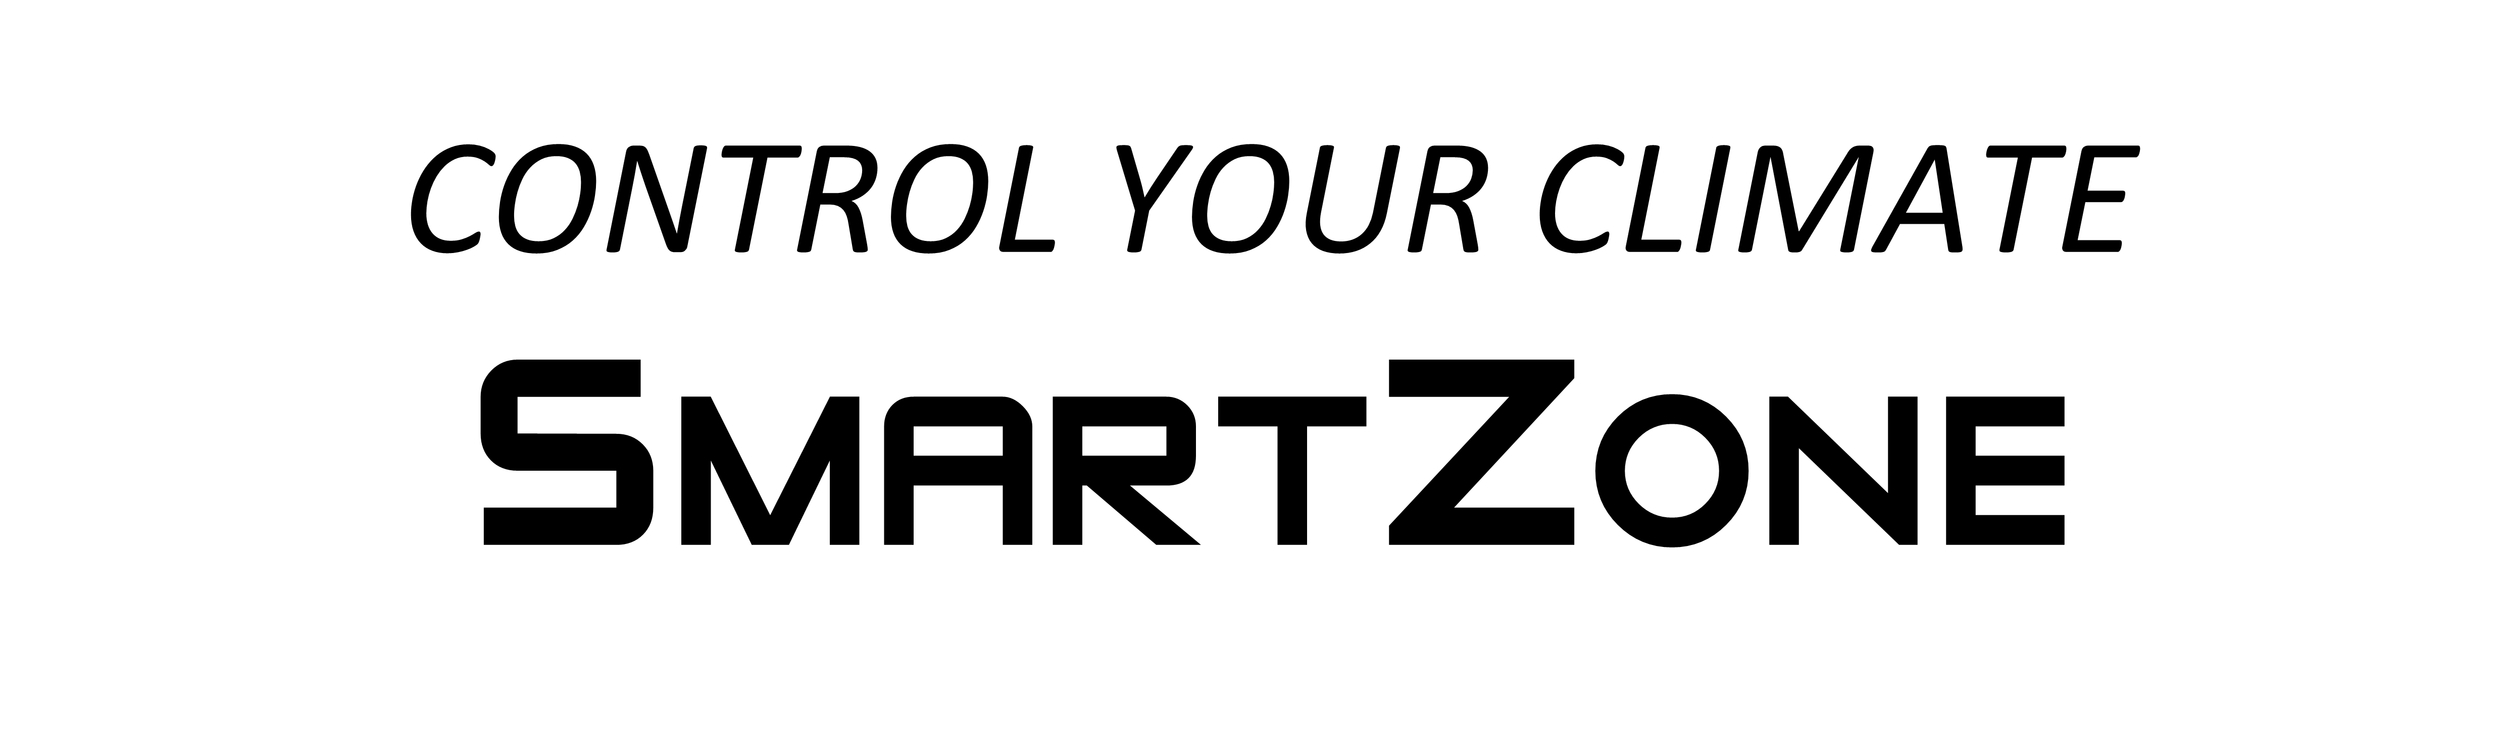 SmartZone - Climate Control